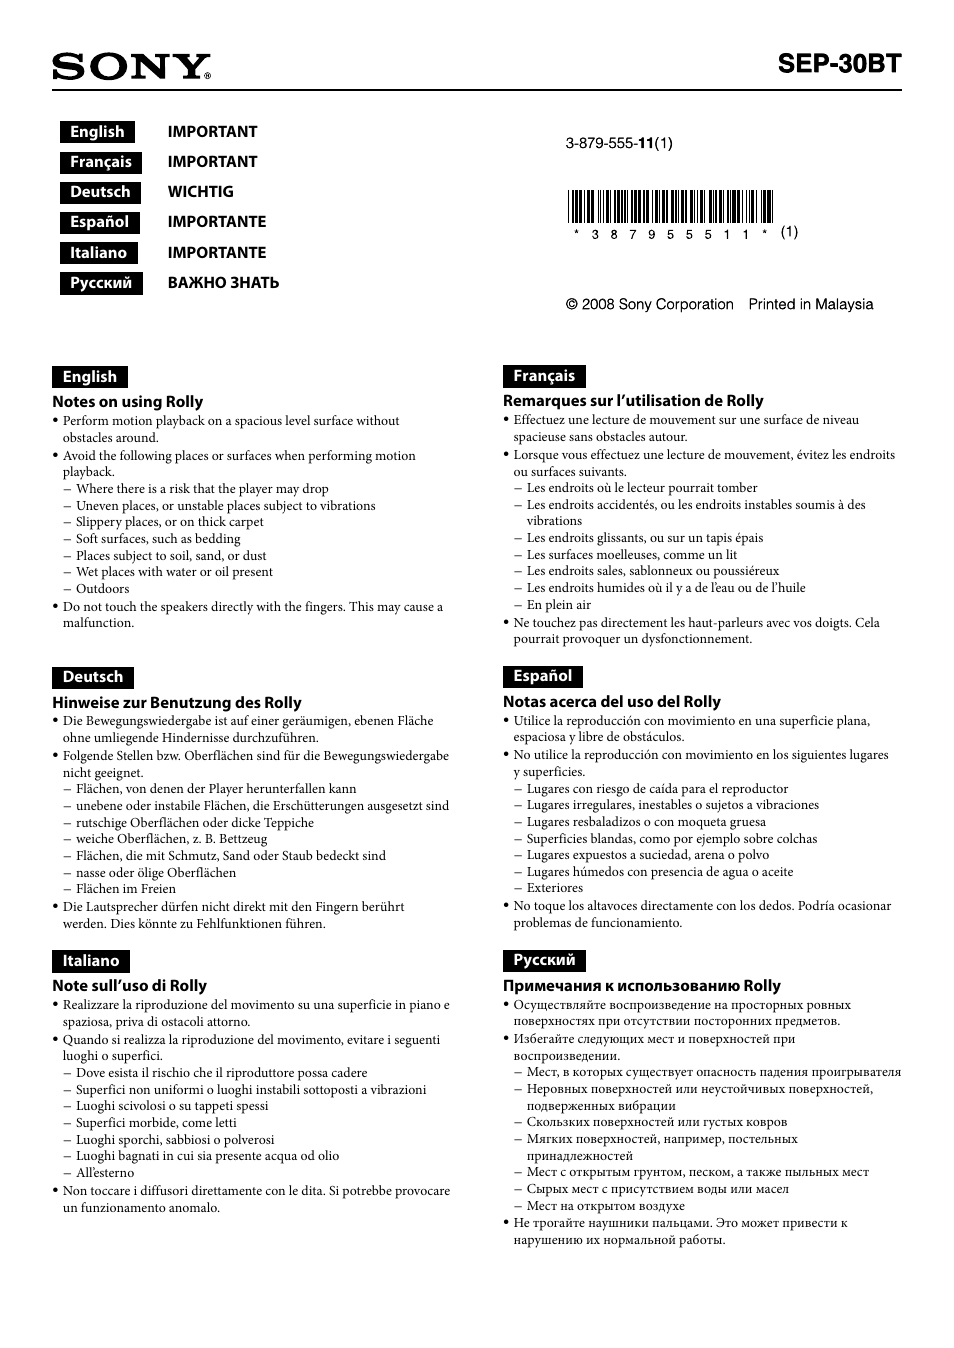 Инструкция по эксплуатации Sony SEP-30BTWHI | 1 cтраница